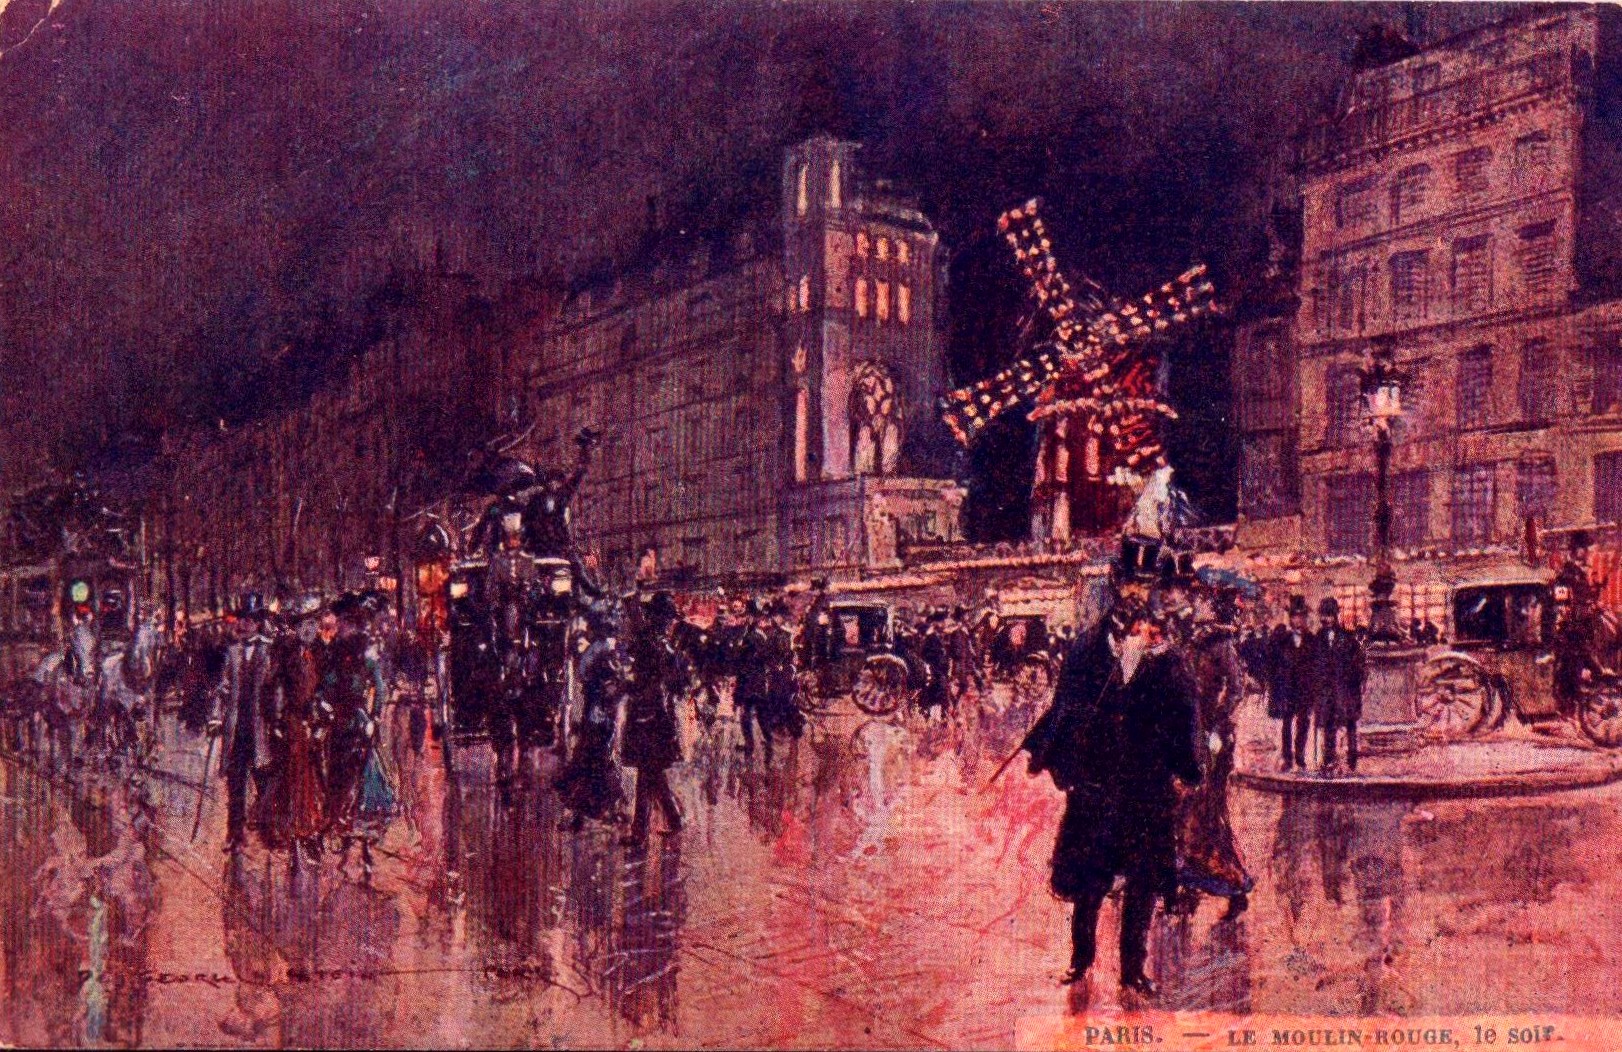 Inaugurato il Moulin Rouge a Parigi